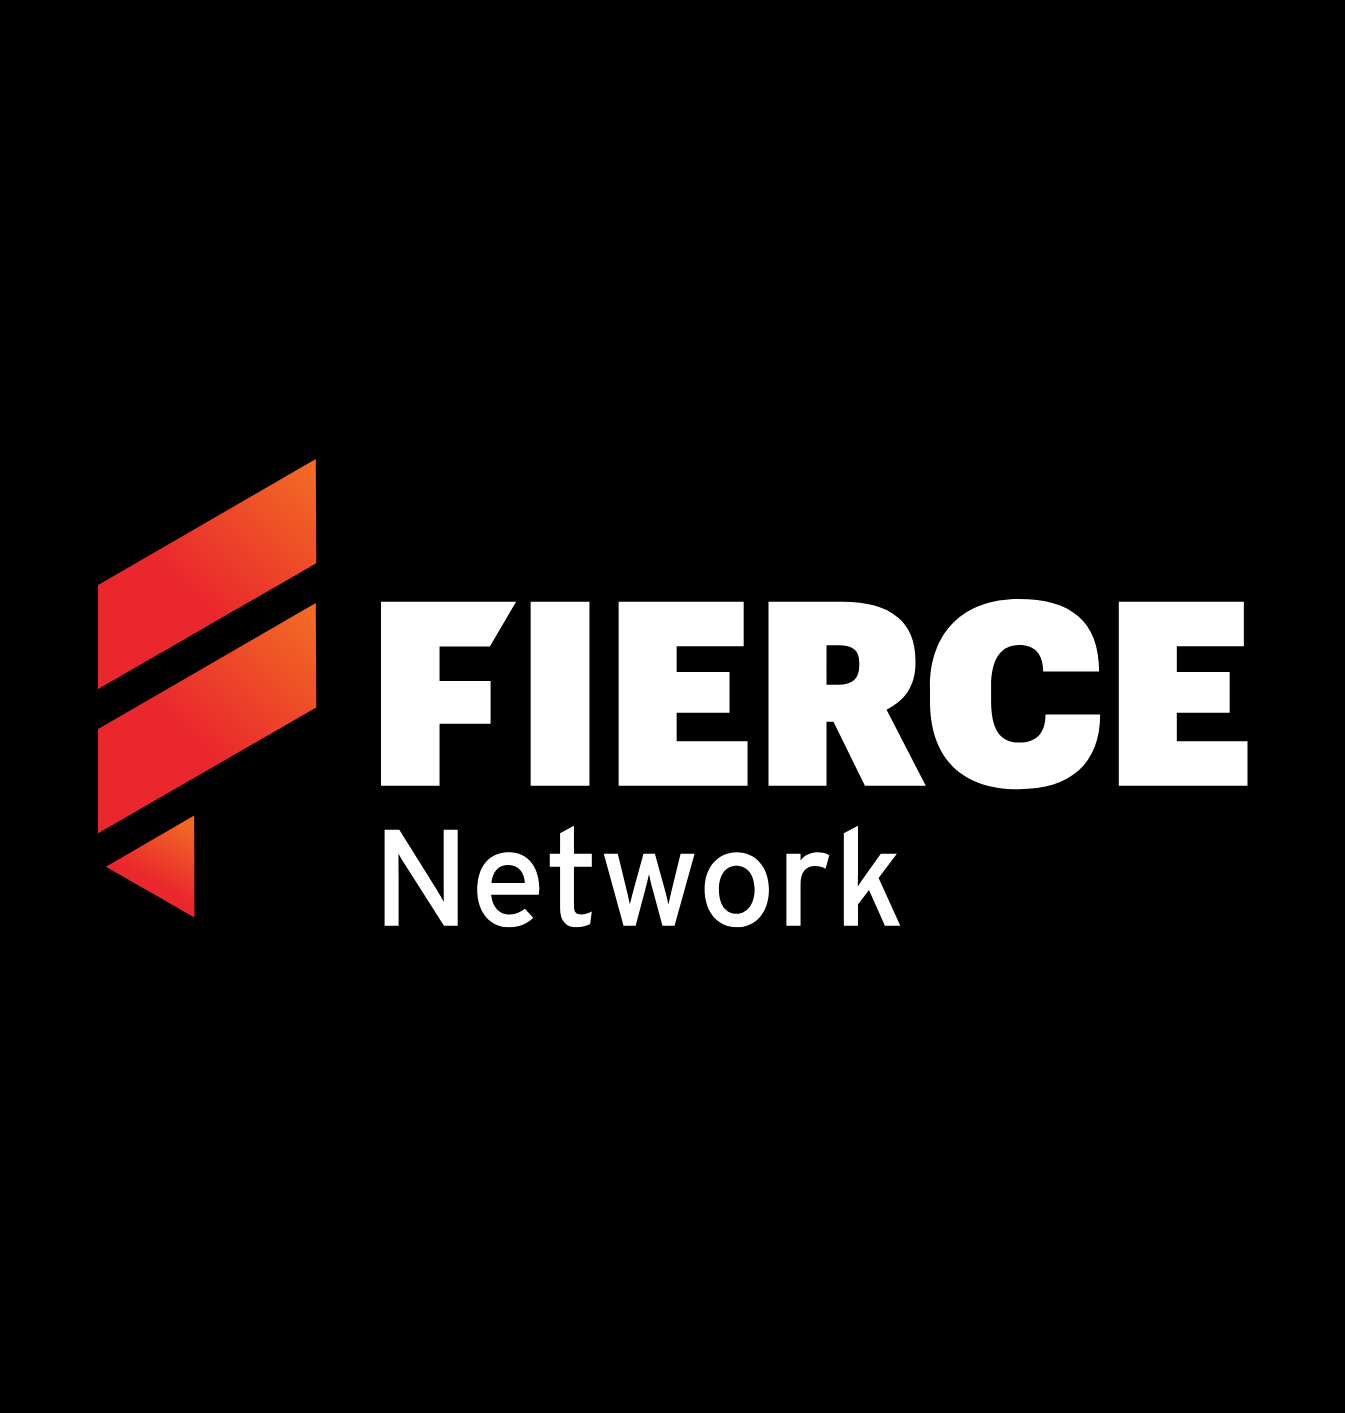 Fierce Network Event